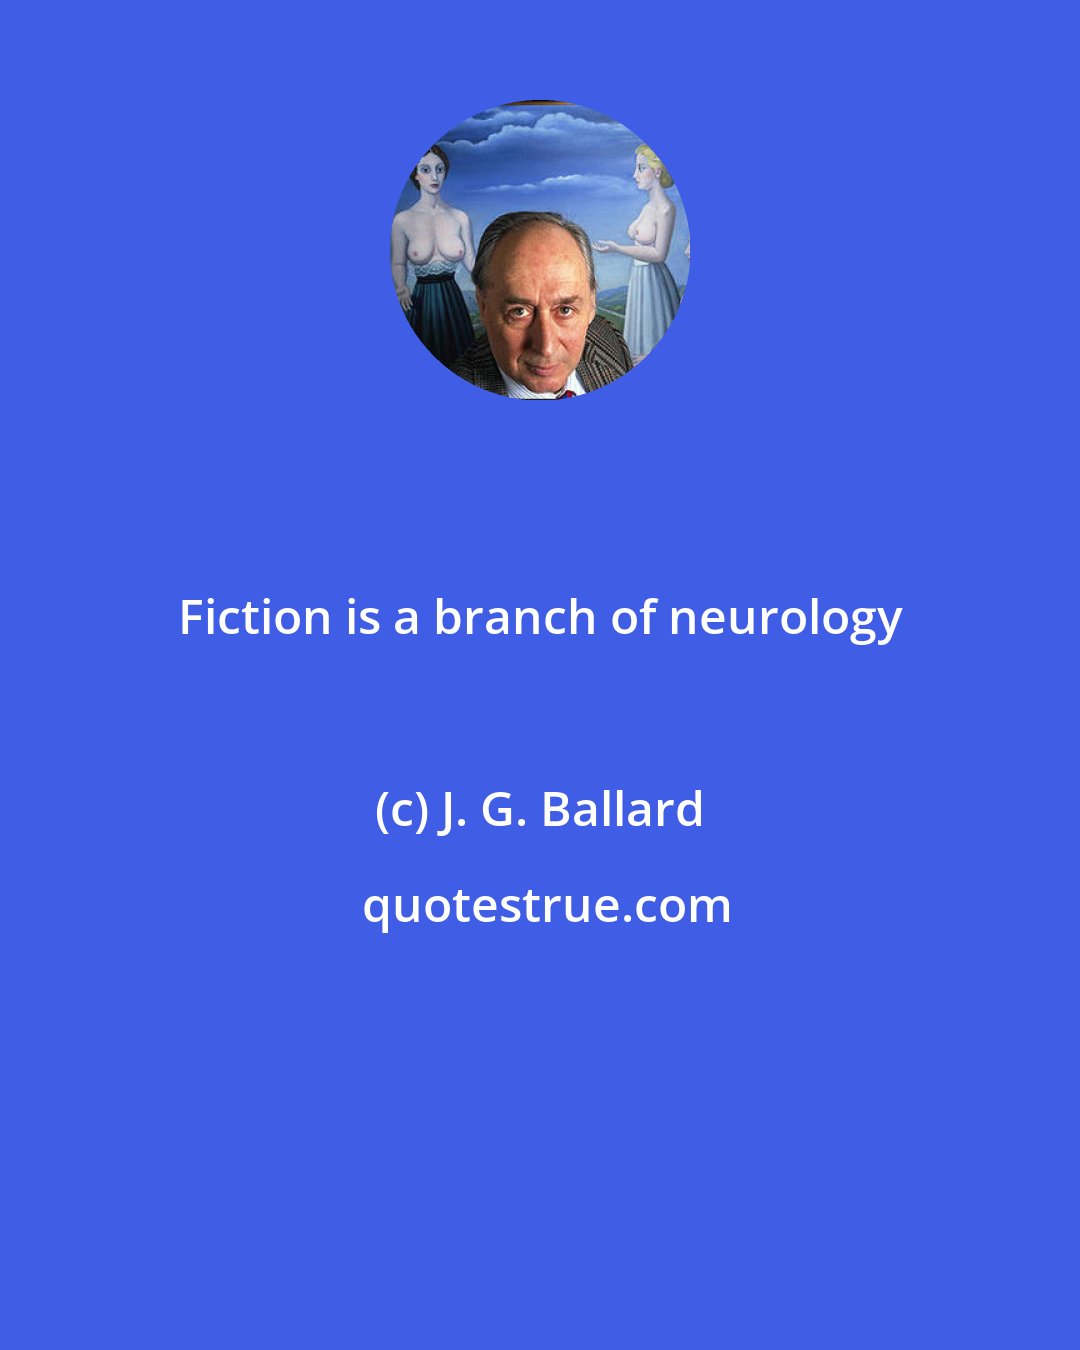 J. G. Ballard: Fiction is a branch of neurology